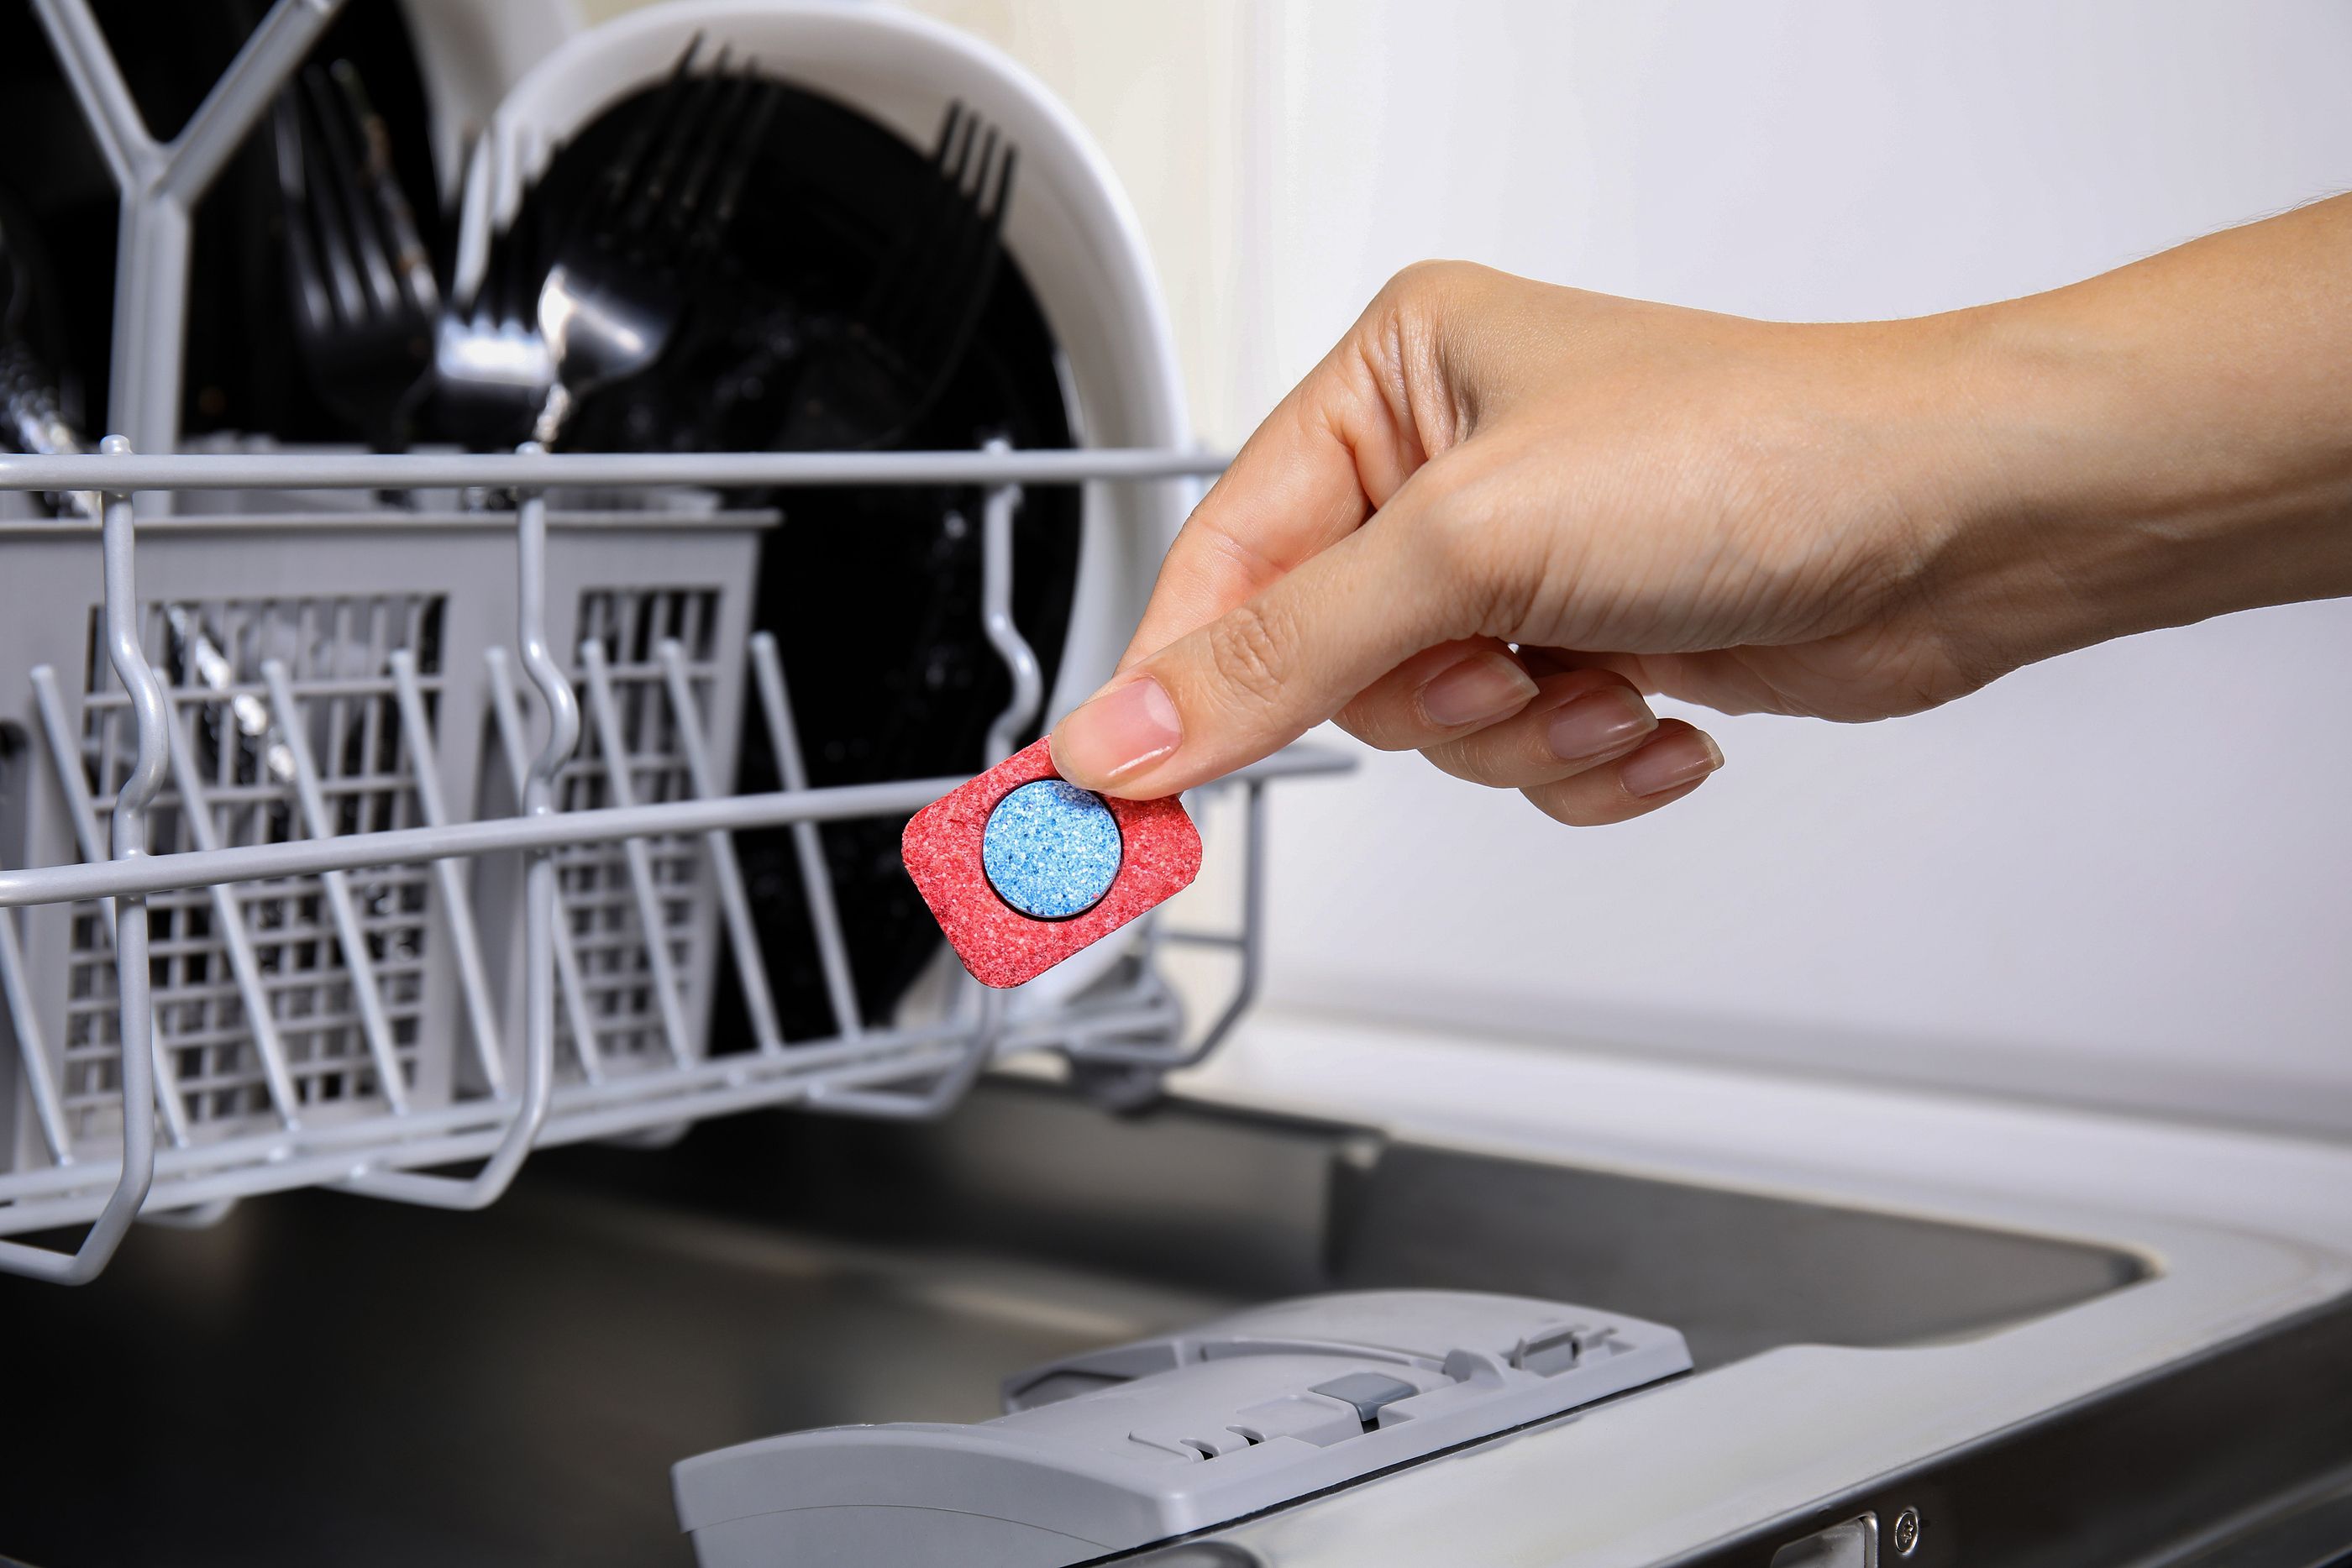 Estos son los mejores detergentes para el lavavajillas, según la OCU. Foto: Bigstock